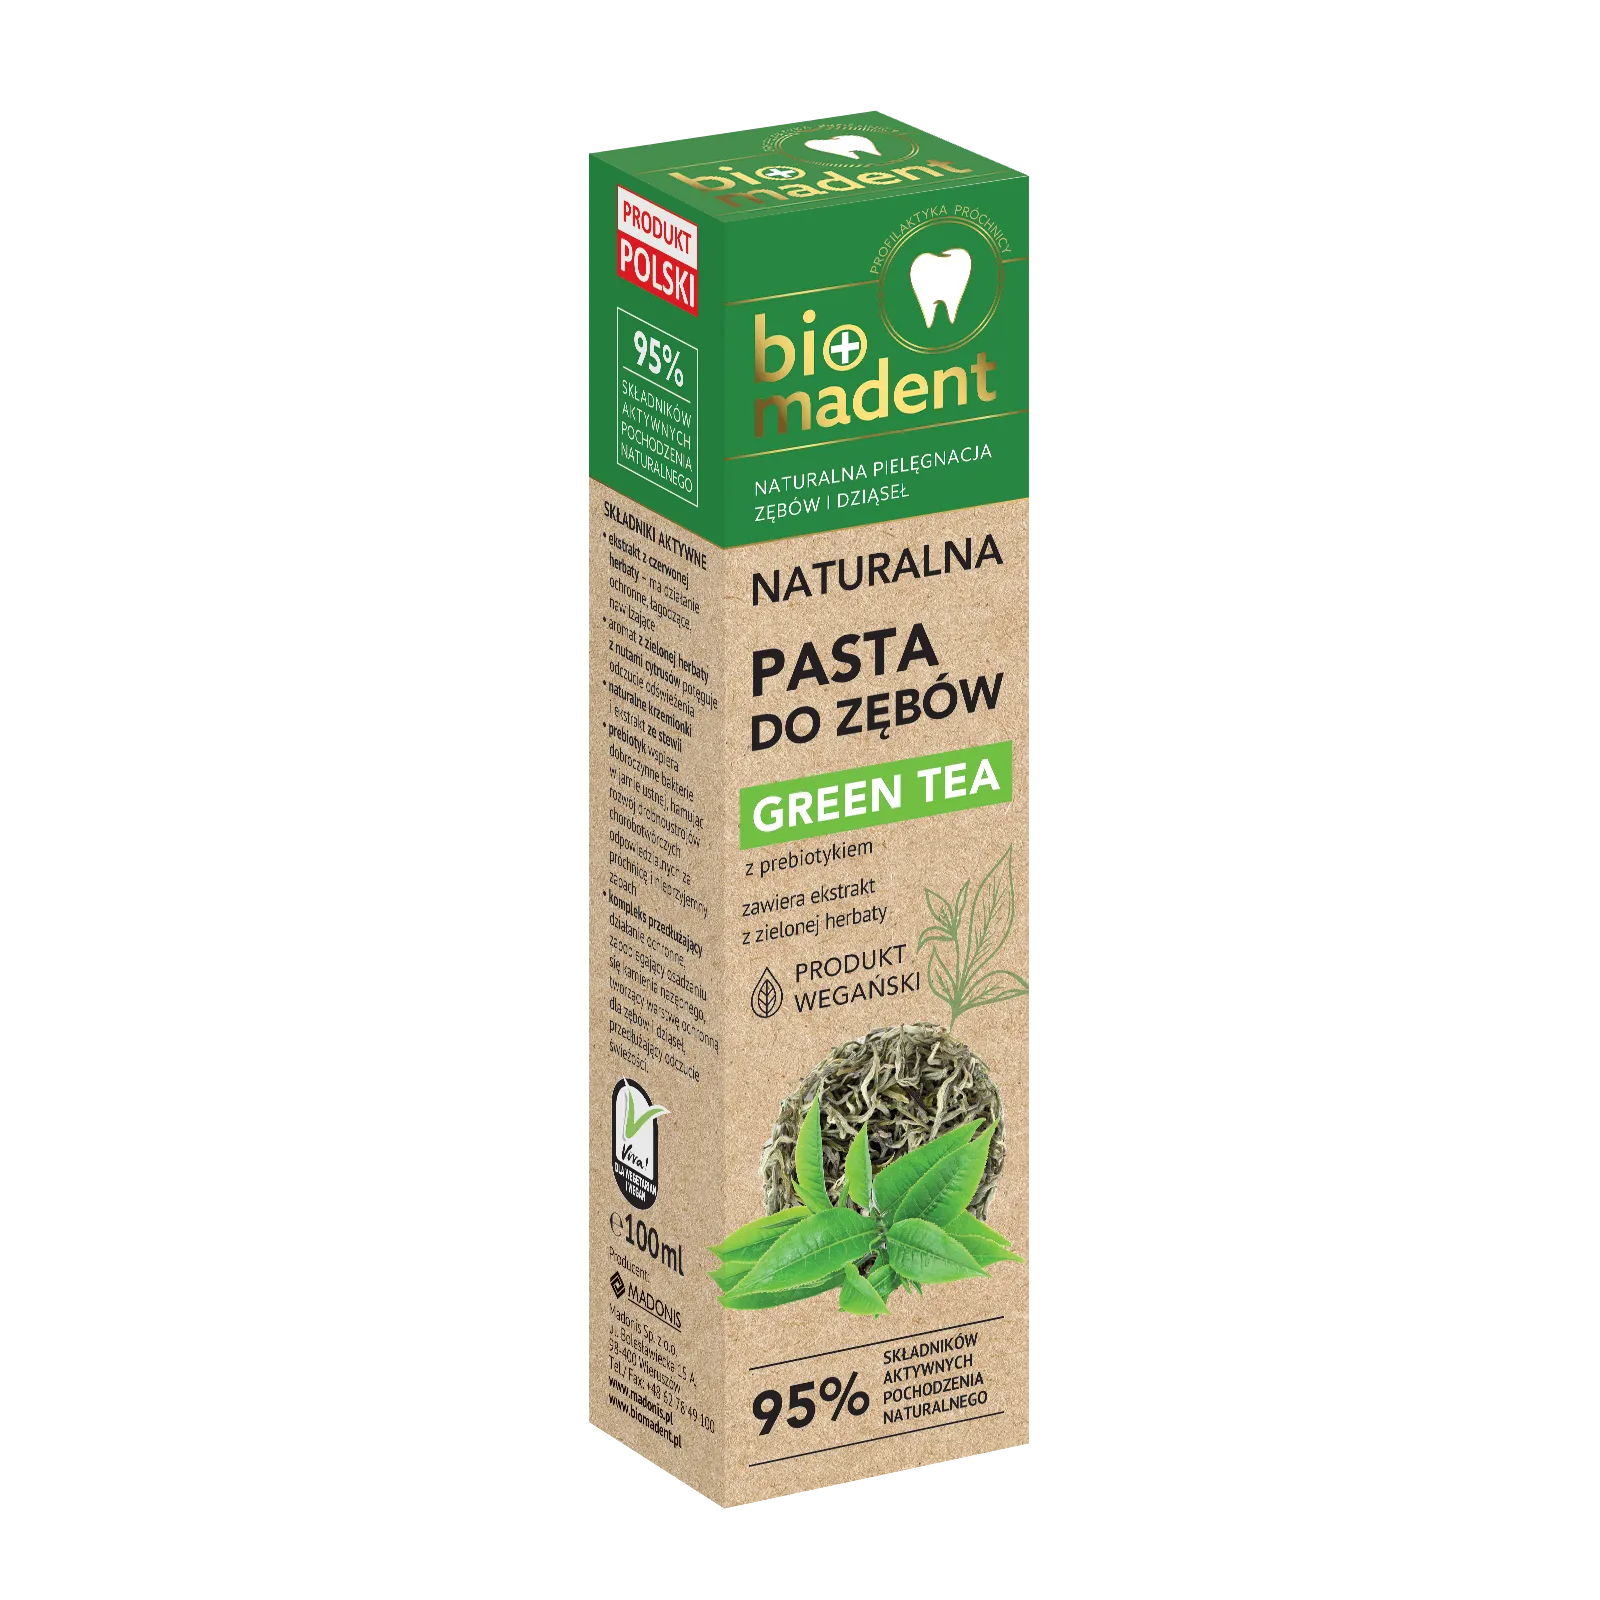 Bio Madent Naturalna pasta do zębów Green Tea z prebiotykiem i ekstraktem z zielonej herbaty, 100 ml